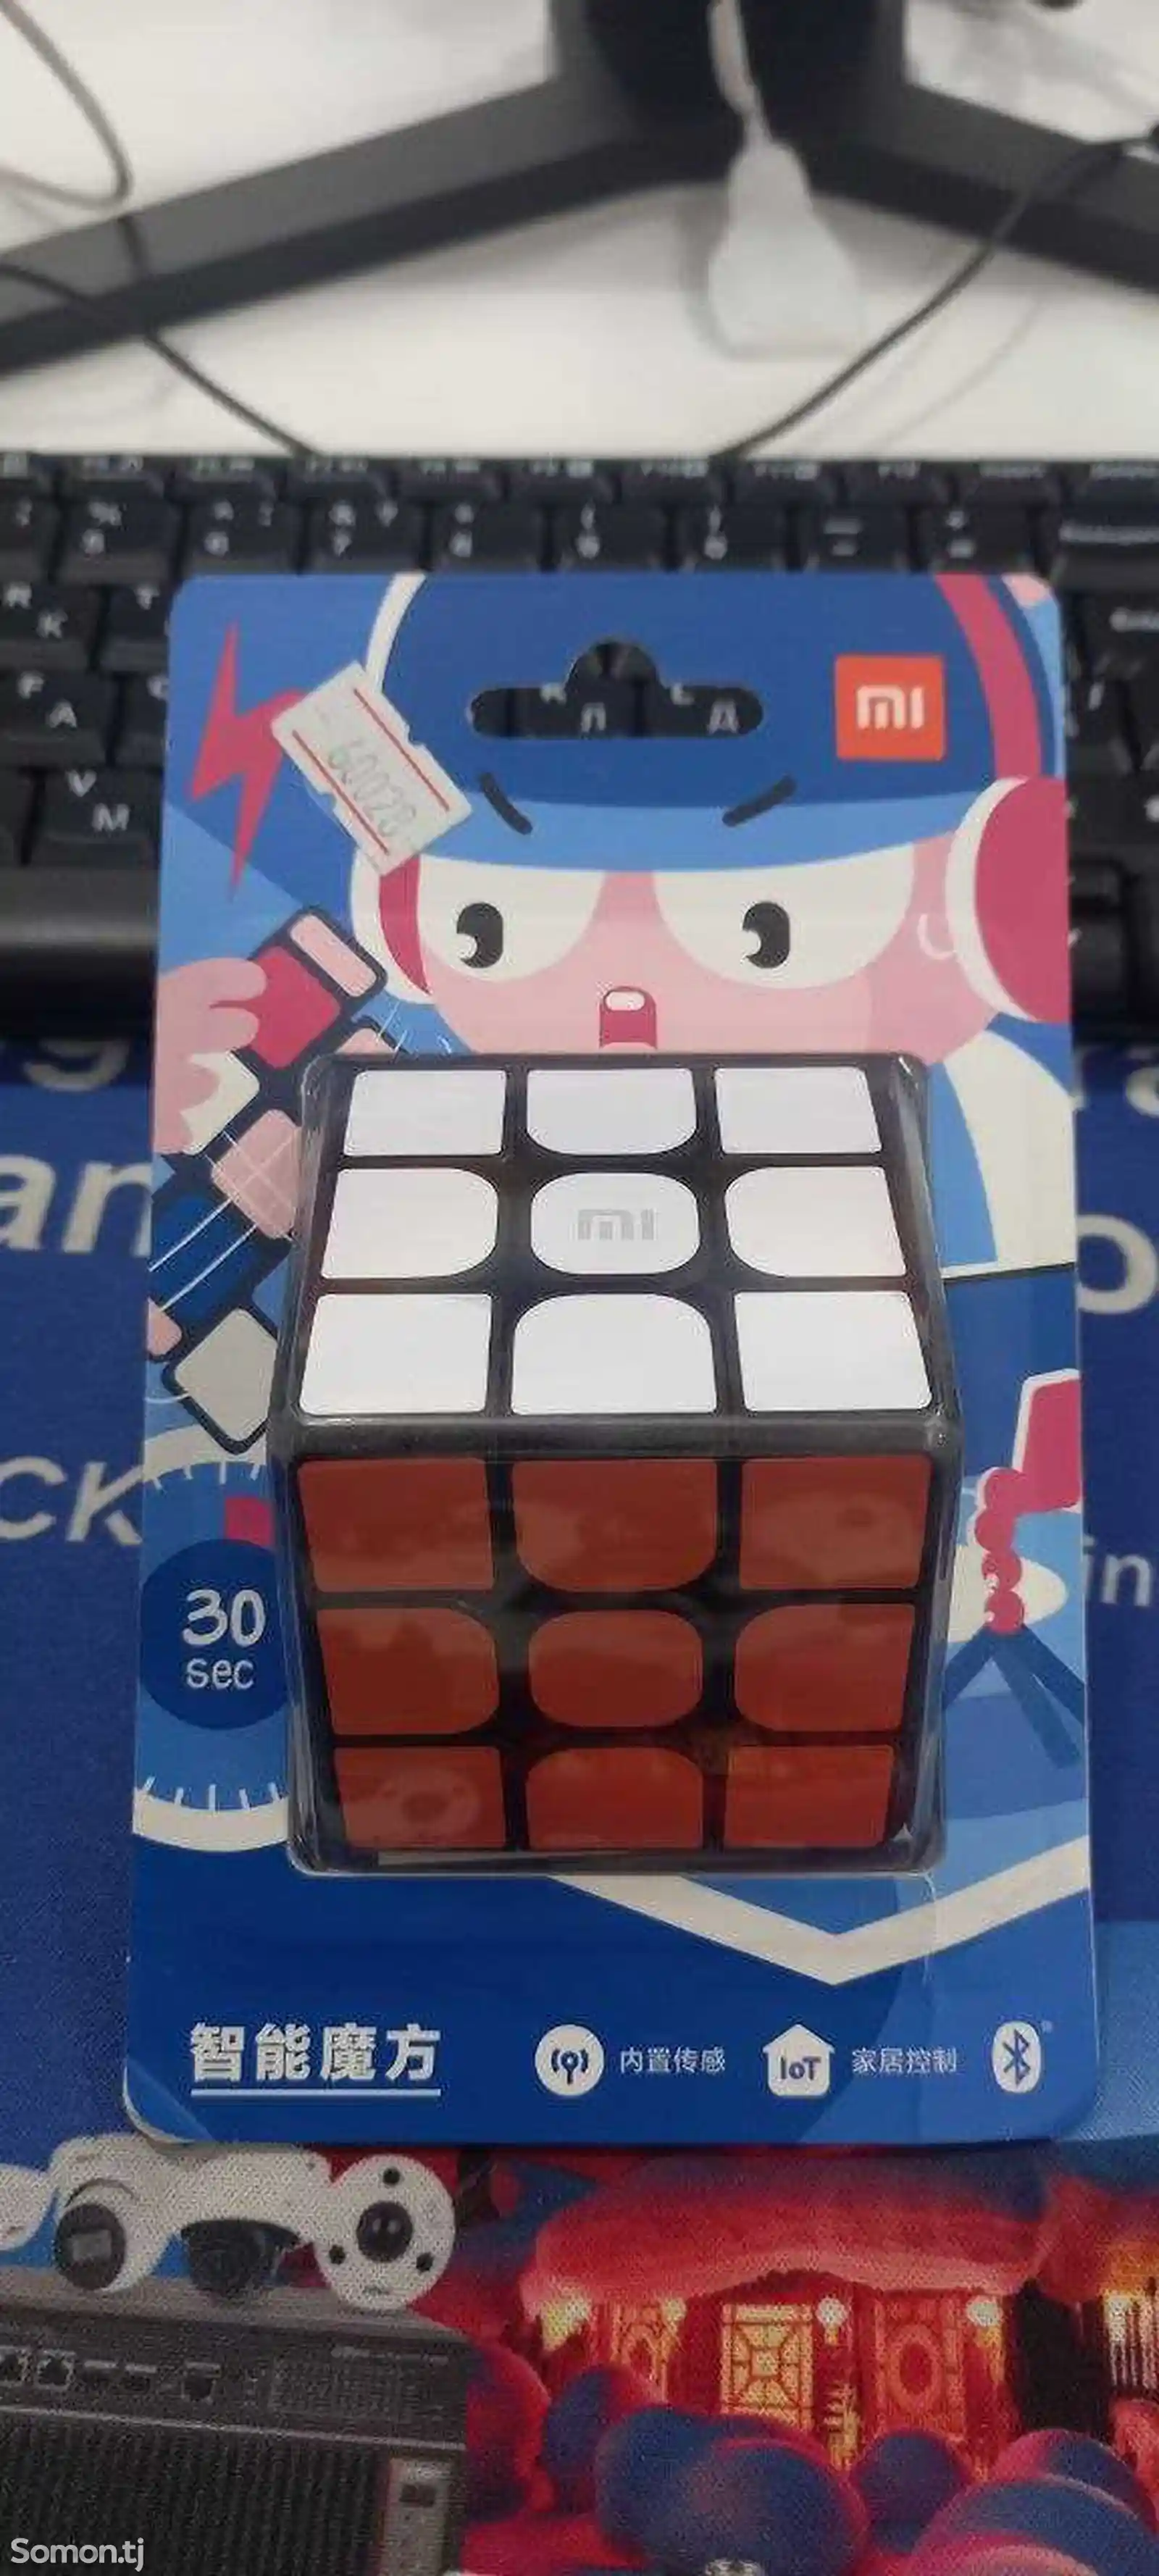 Умный Кубик Рубика Xiaomi Mijia Smart Magic Cube